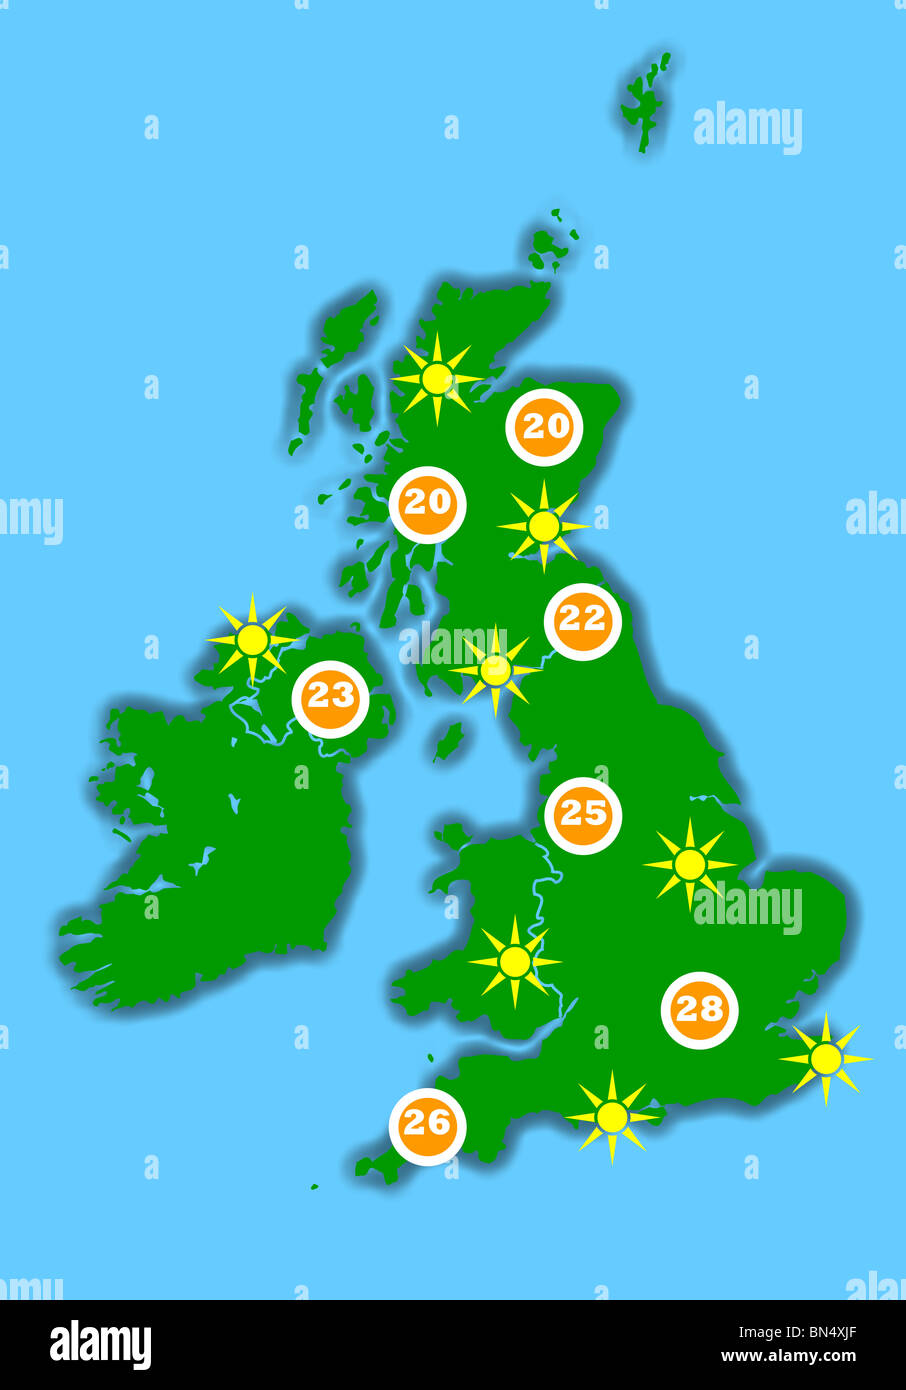 Hot United Kingdom weather map, isolated on blue background. Stock Photo